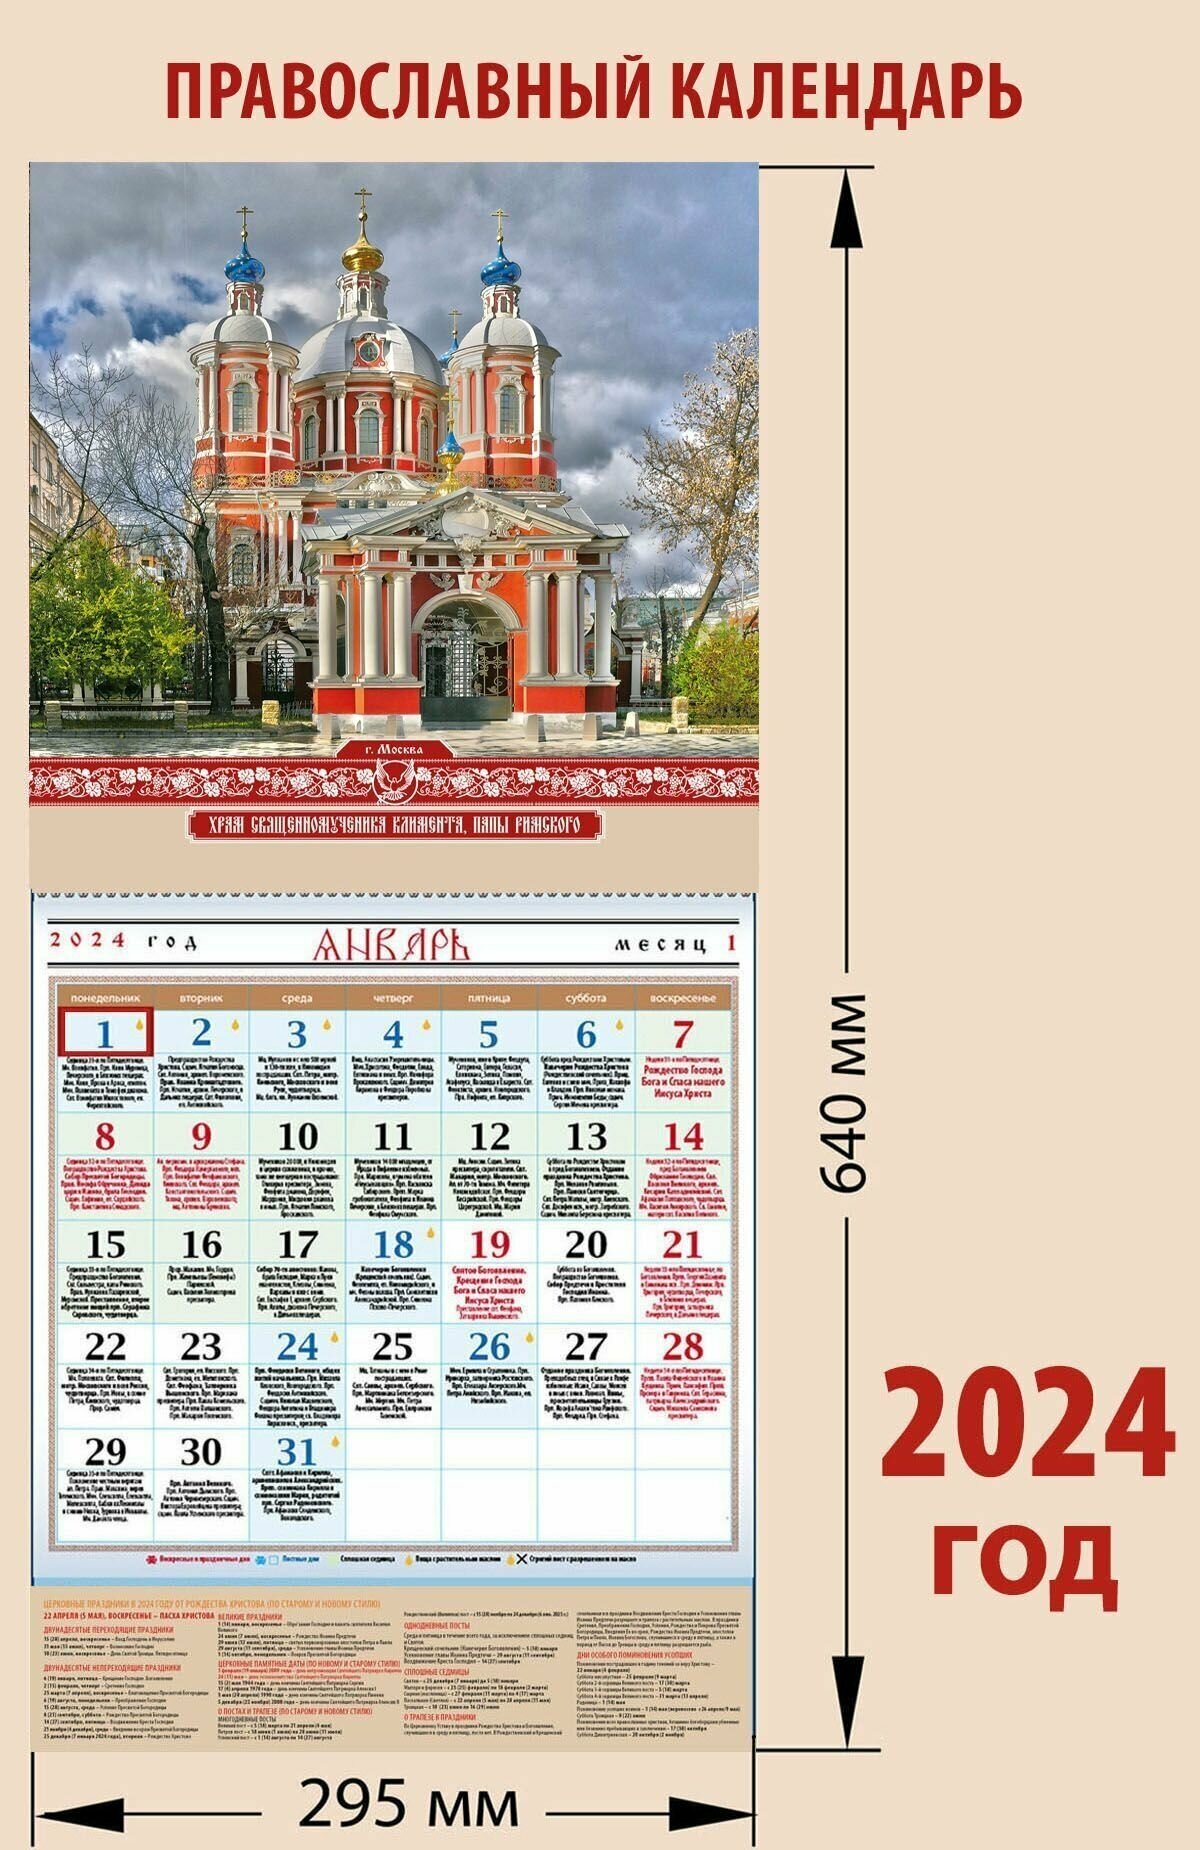 Календарь православный на 2024 год с храмом "Священномученика Климента, папы Римского"с праздниками на каждый день